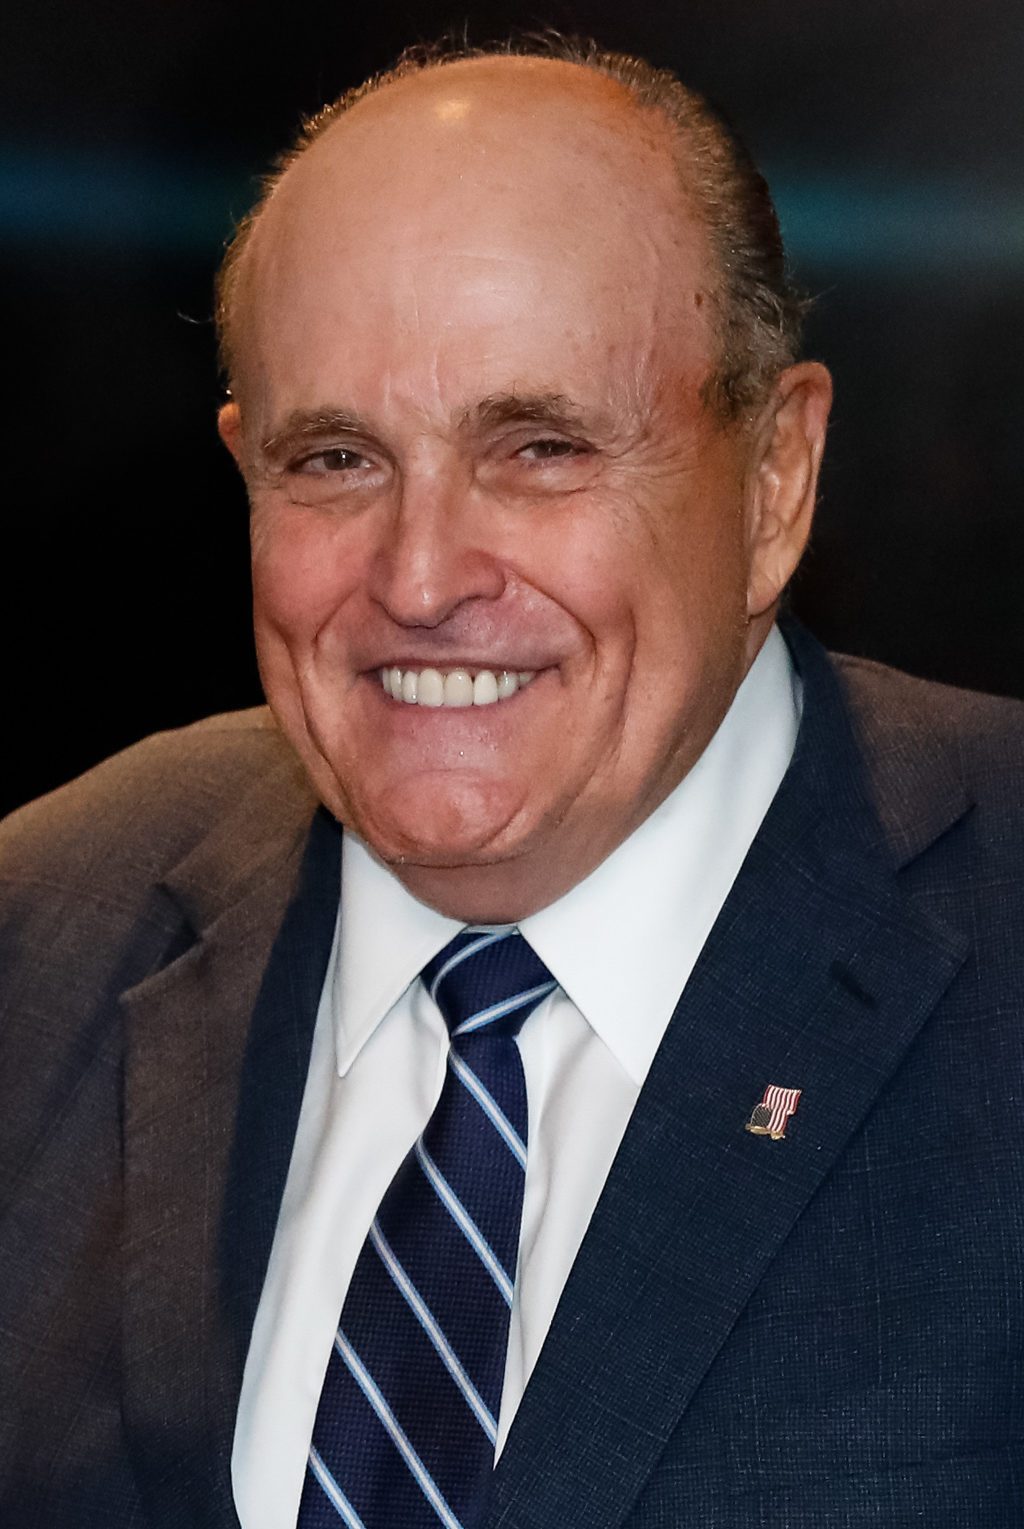 Rudy Giuliani NYSBA